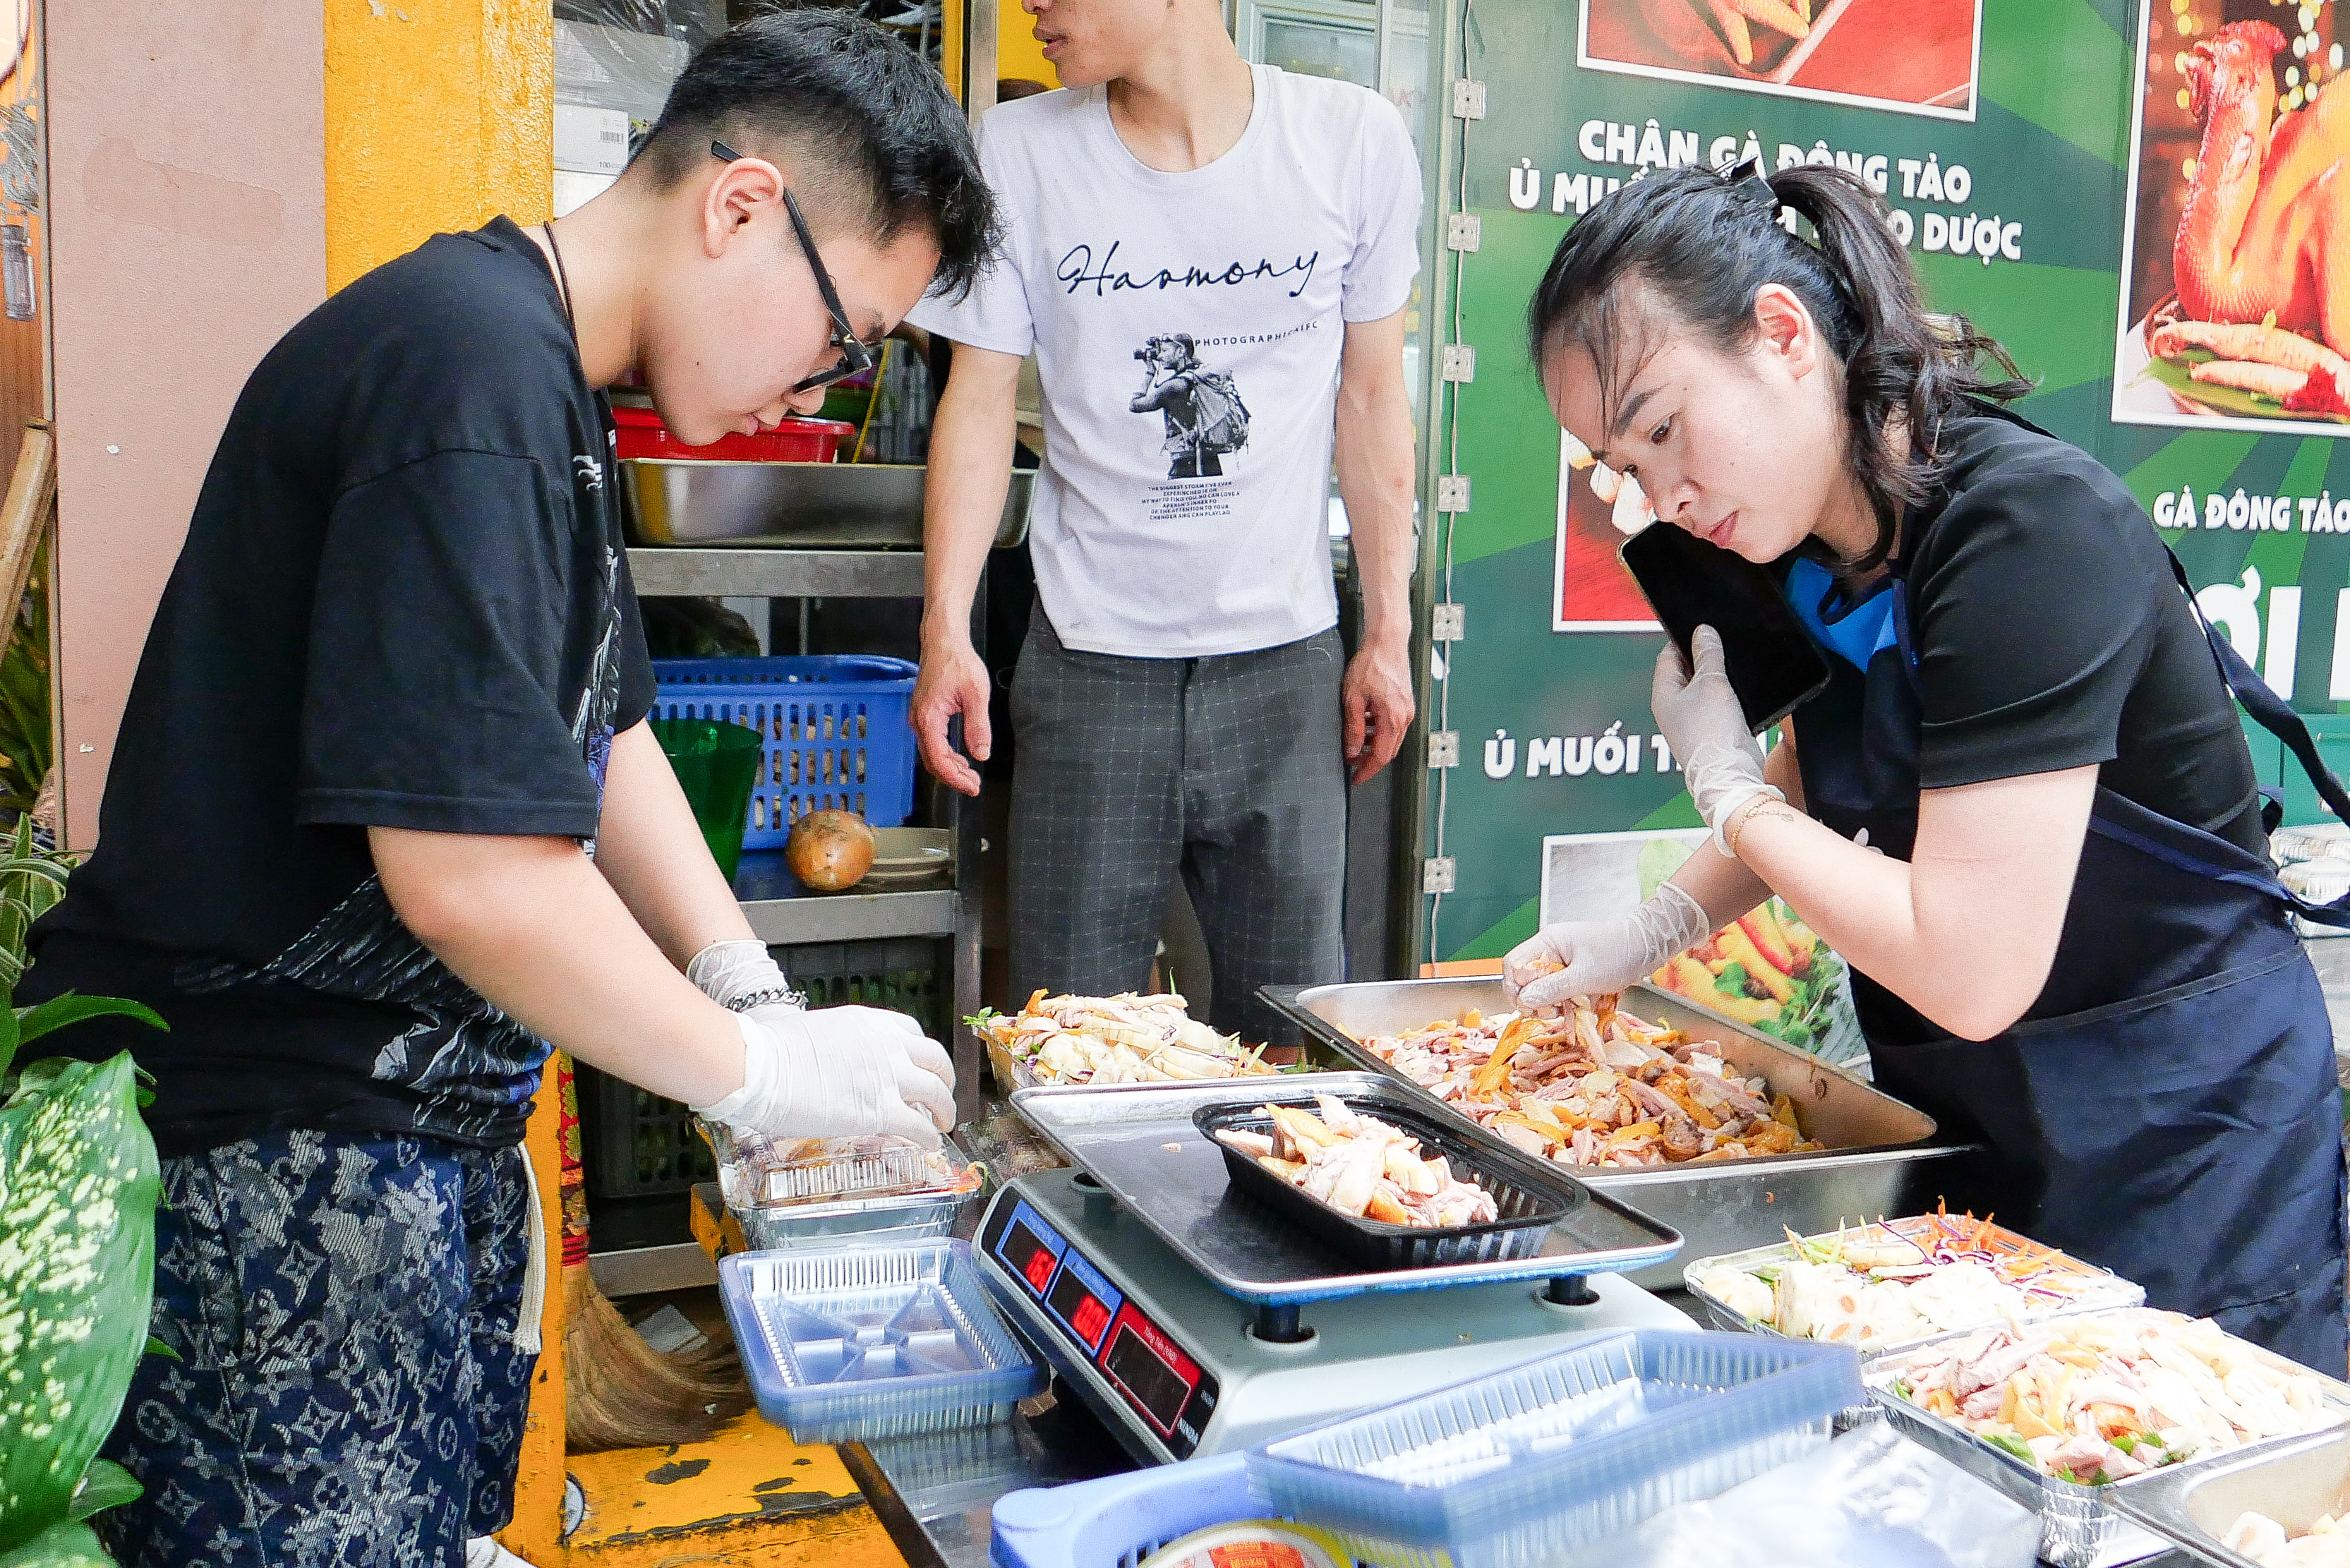 Đầu bếp 9x ở Hà Nội bán 400 suất gỏi gà măng cụt, thu trăm triệu mỗi ngày